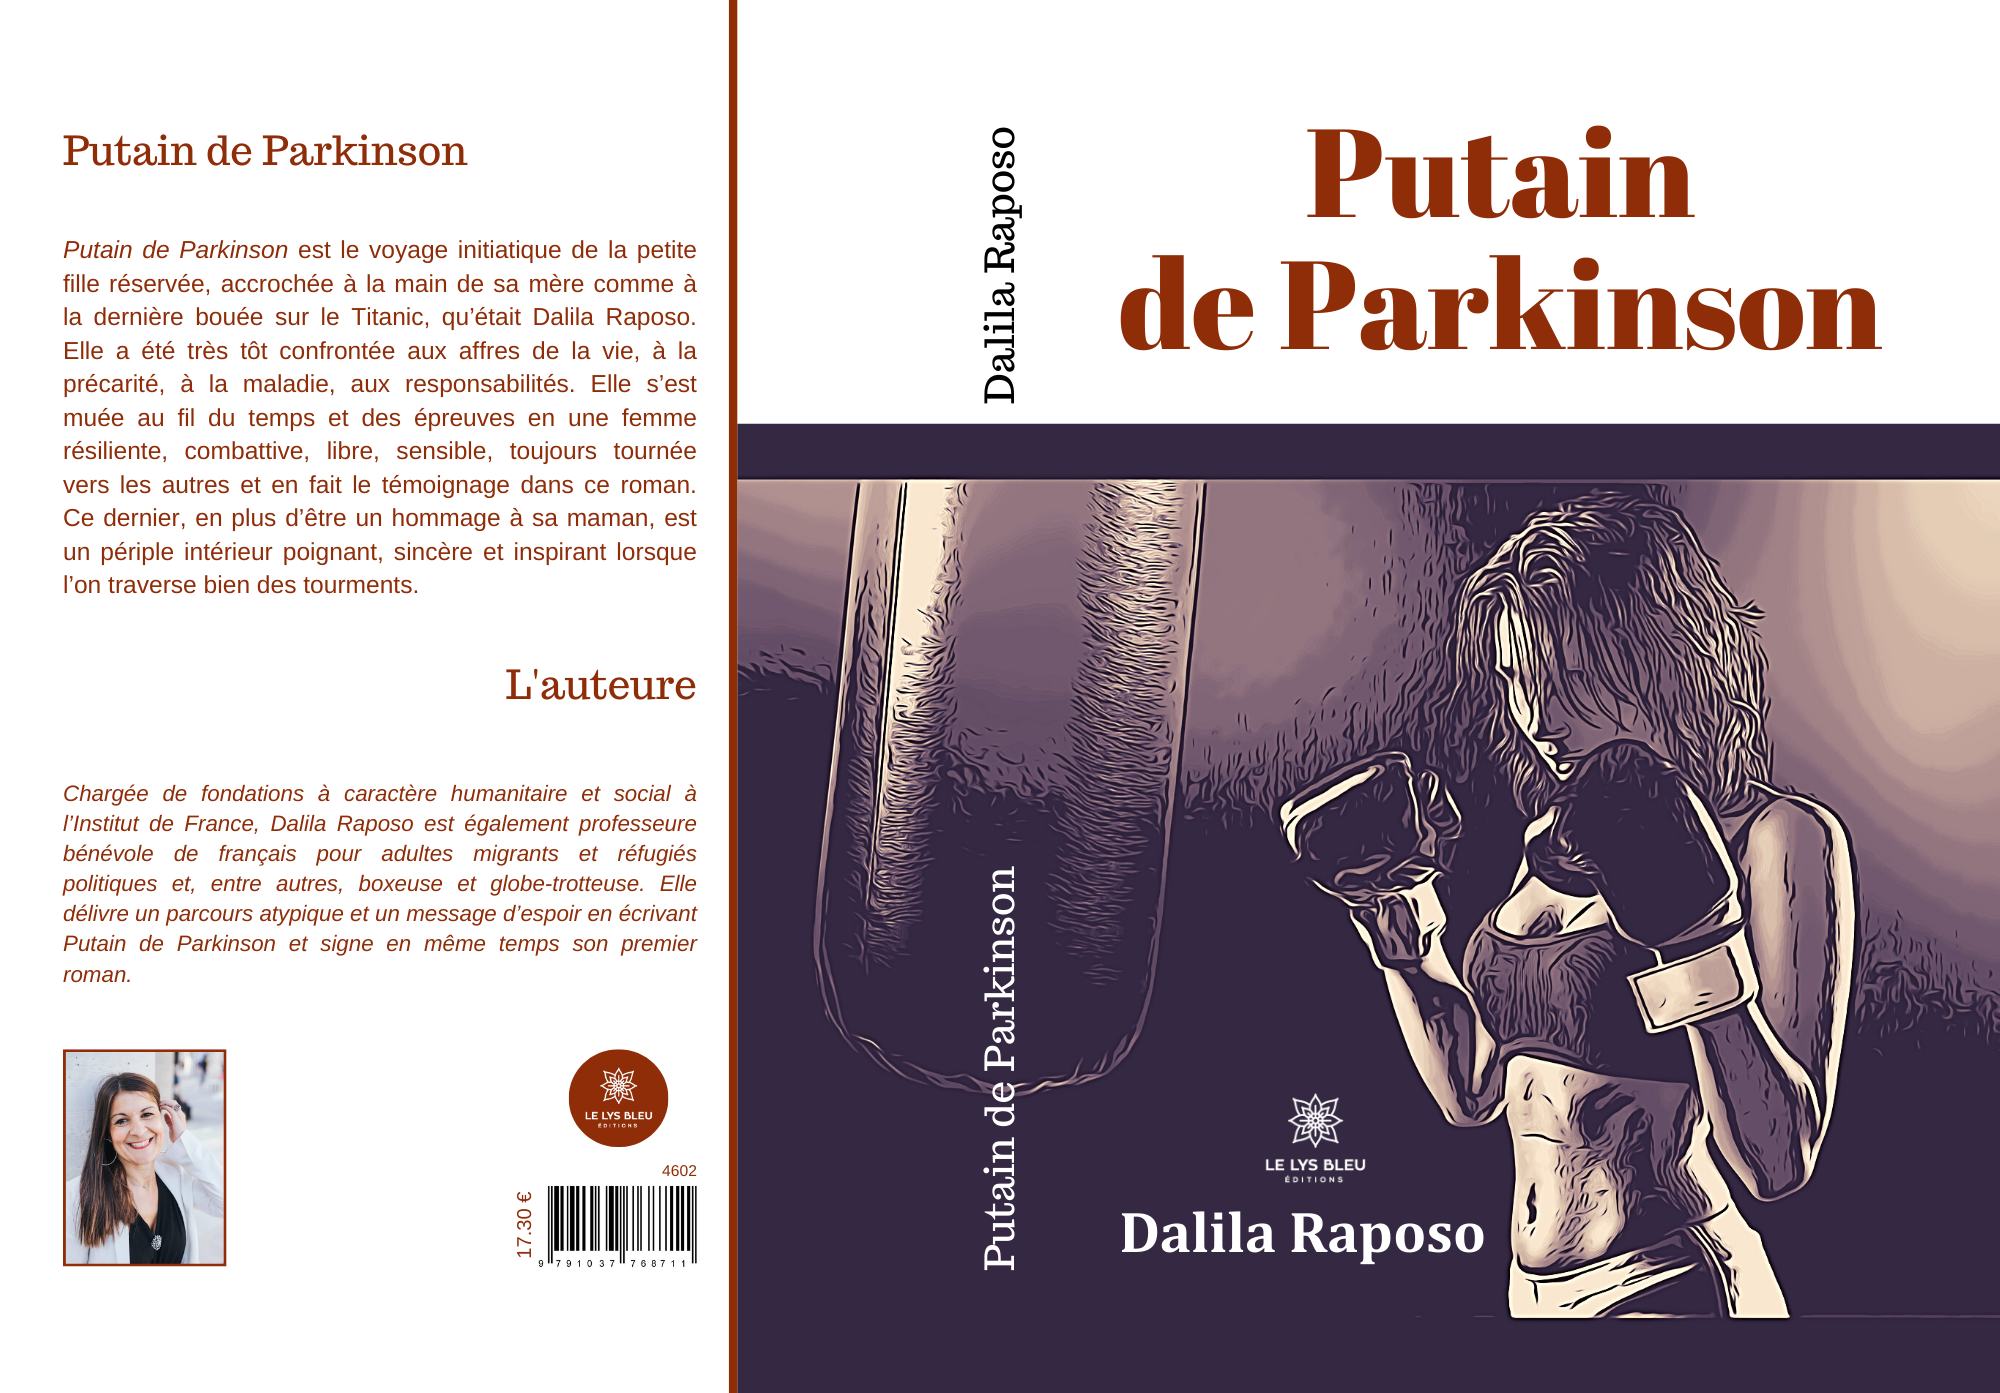 Dalila Raposo "Putain de Parkinson"